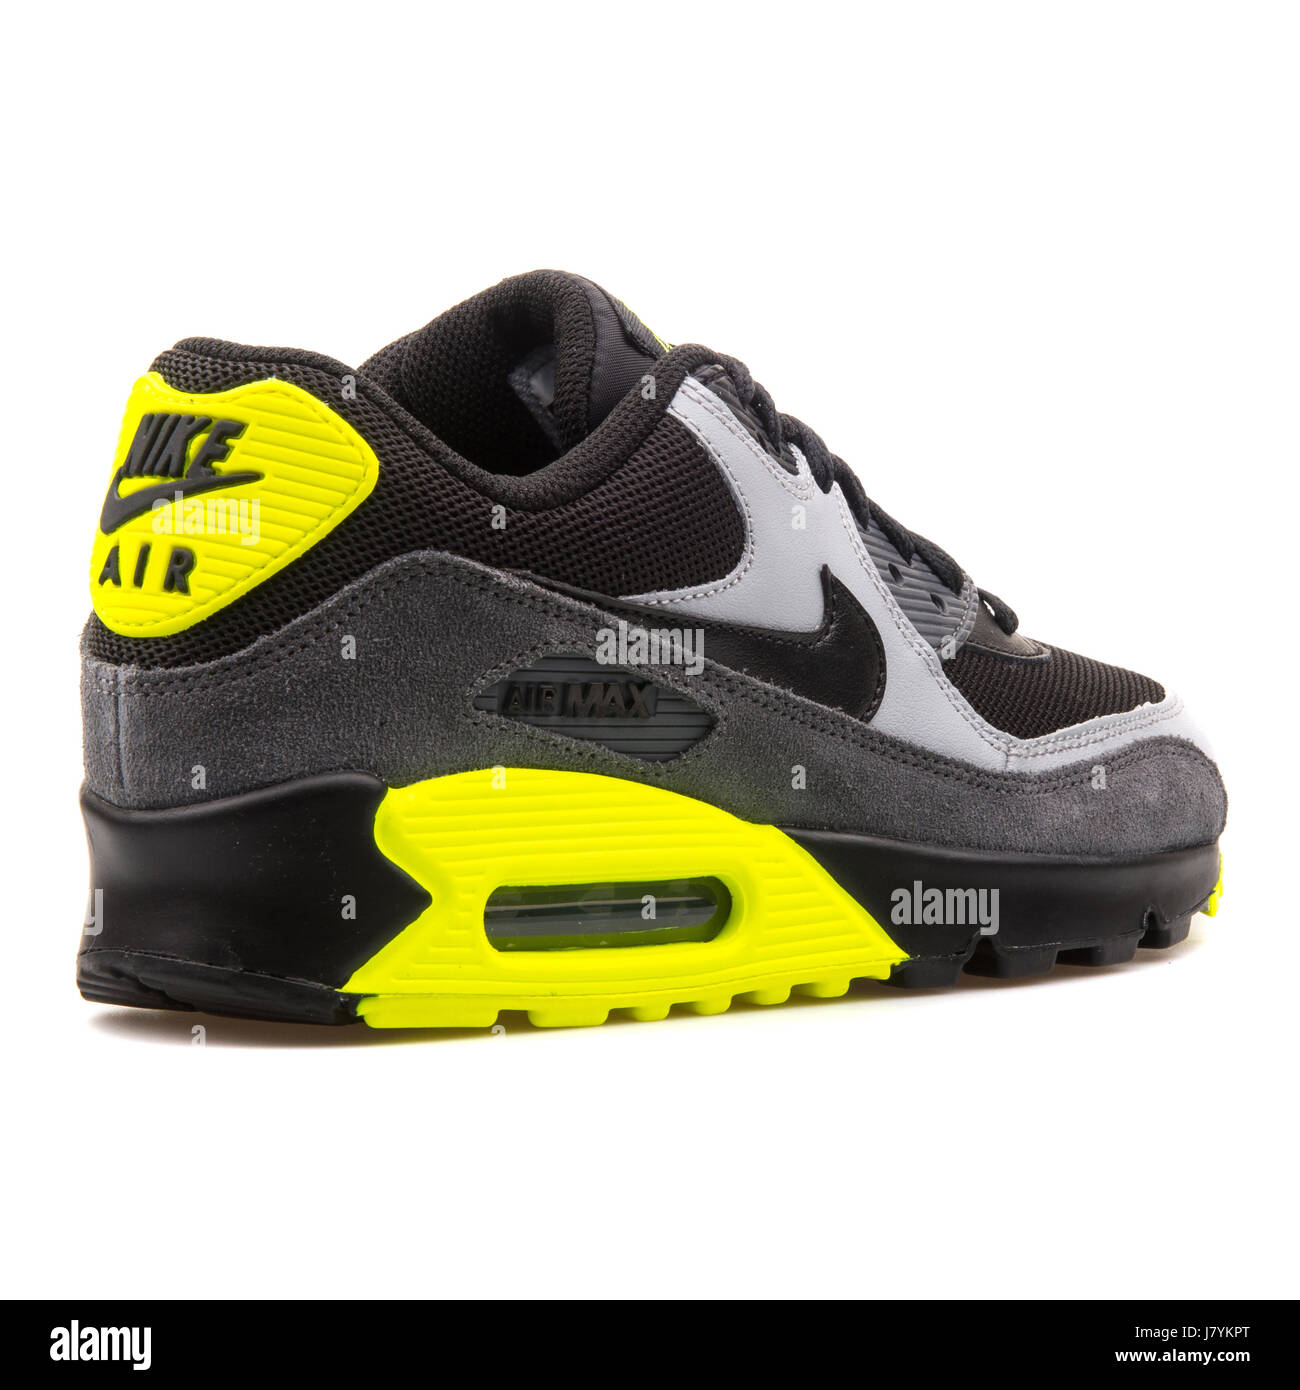 Nike Air Max 90 Malla (GS) la juventud negra de cuero gris y amarillo Sneakers - 724824-002 Fotografía de - Alamy